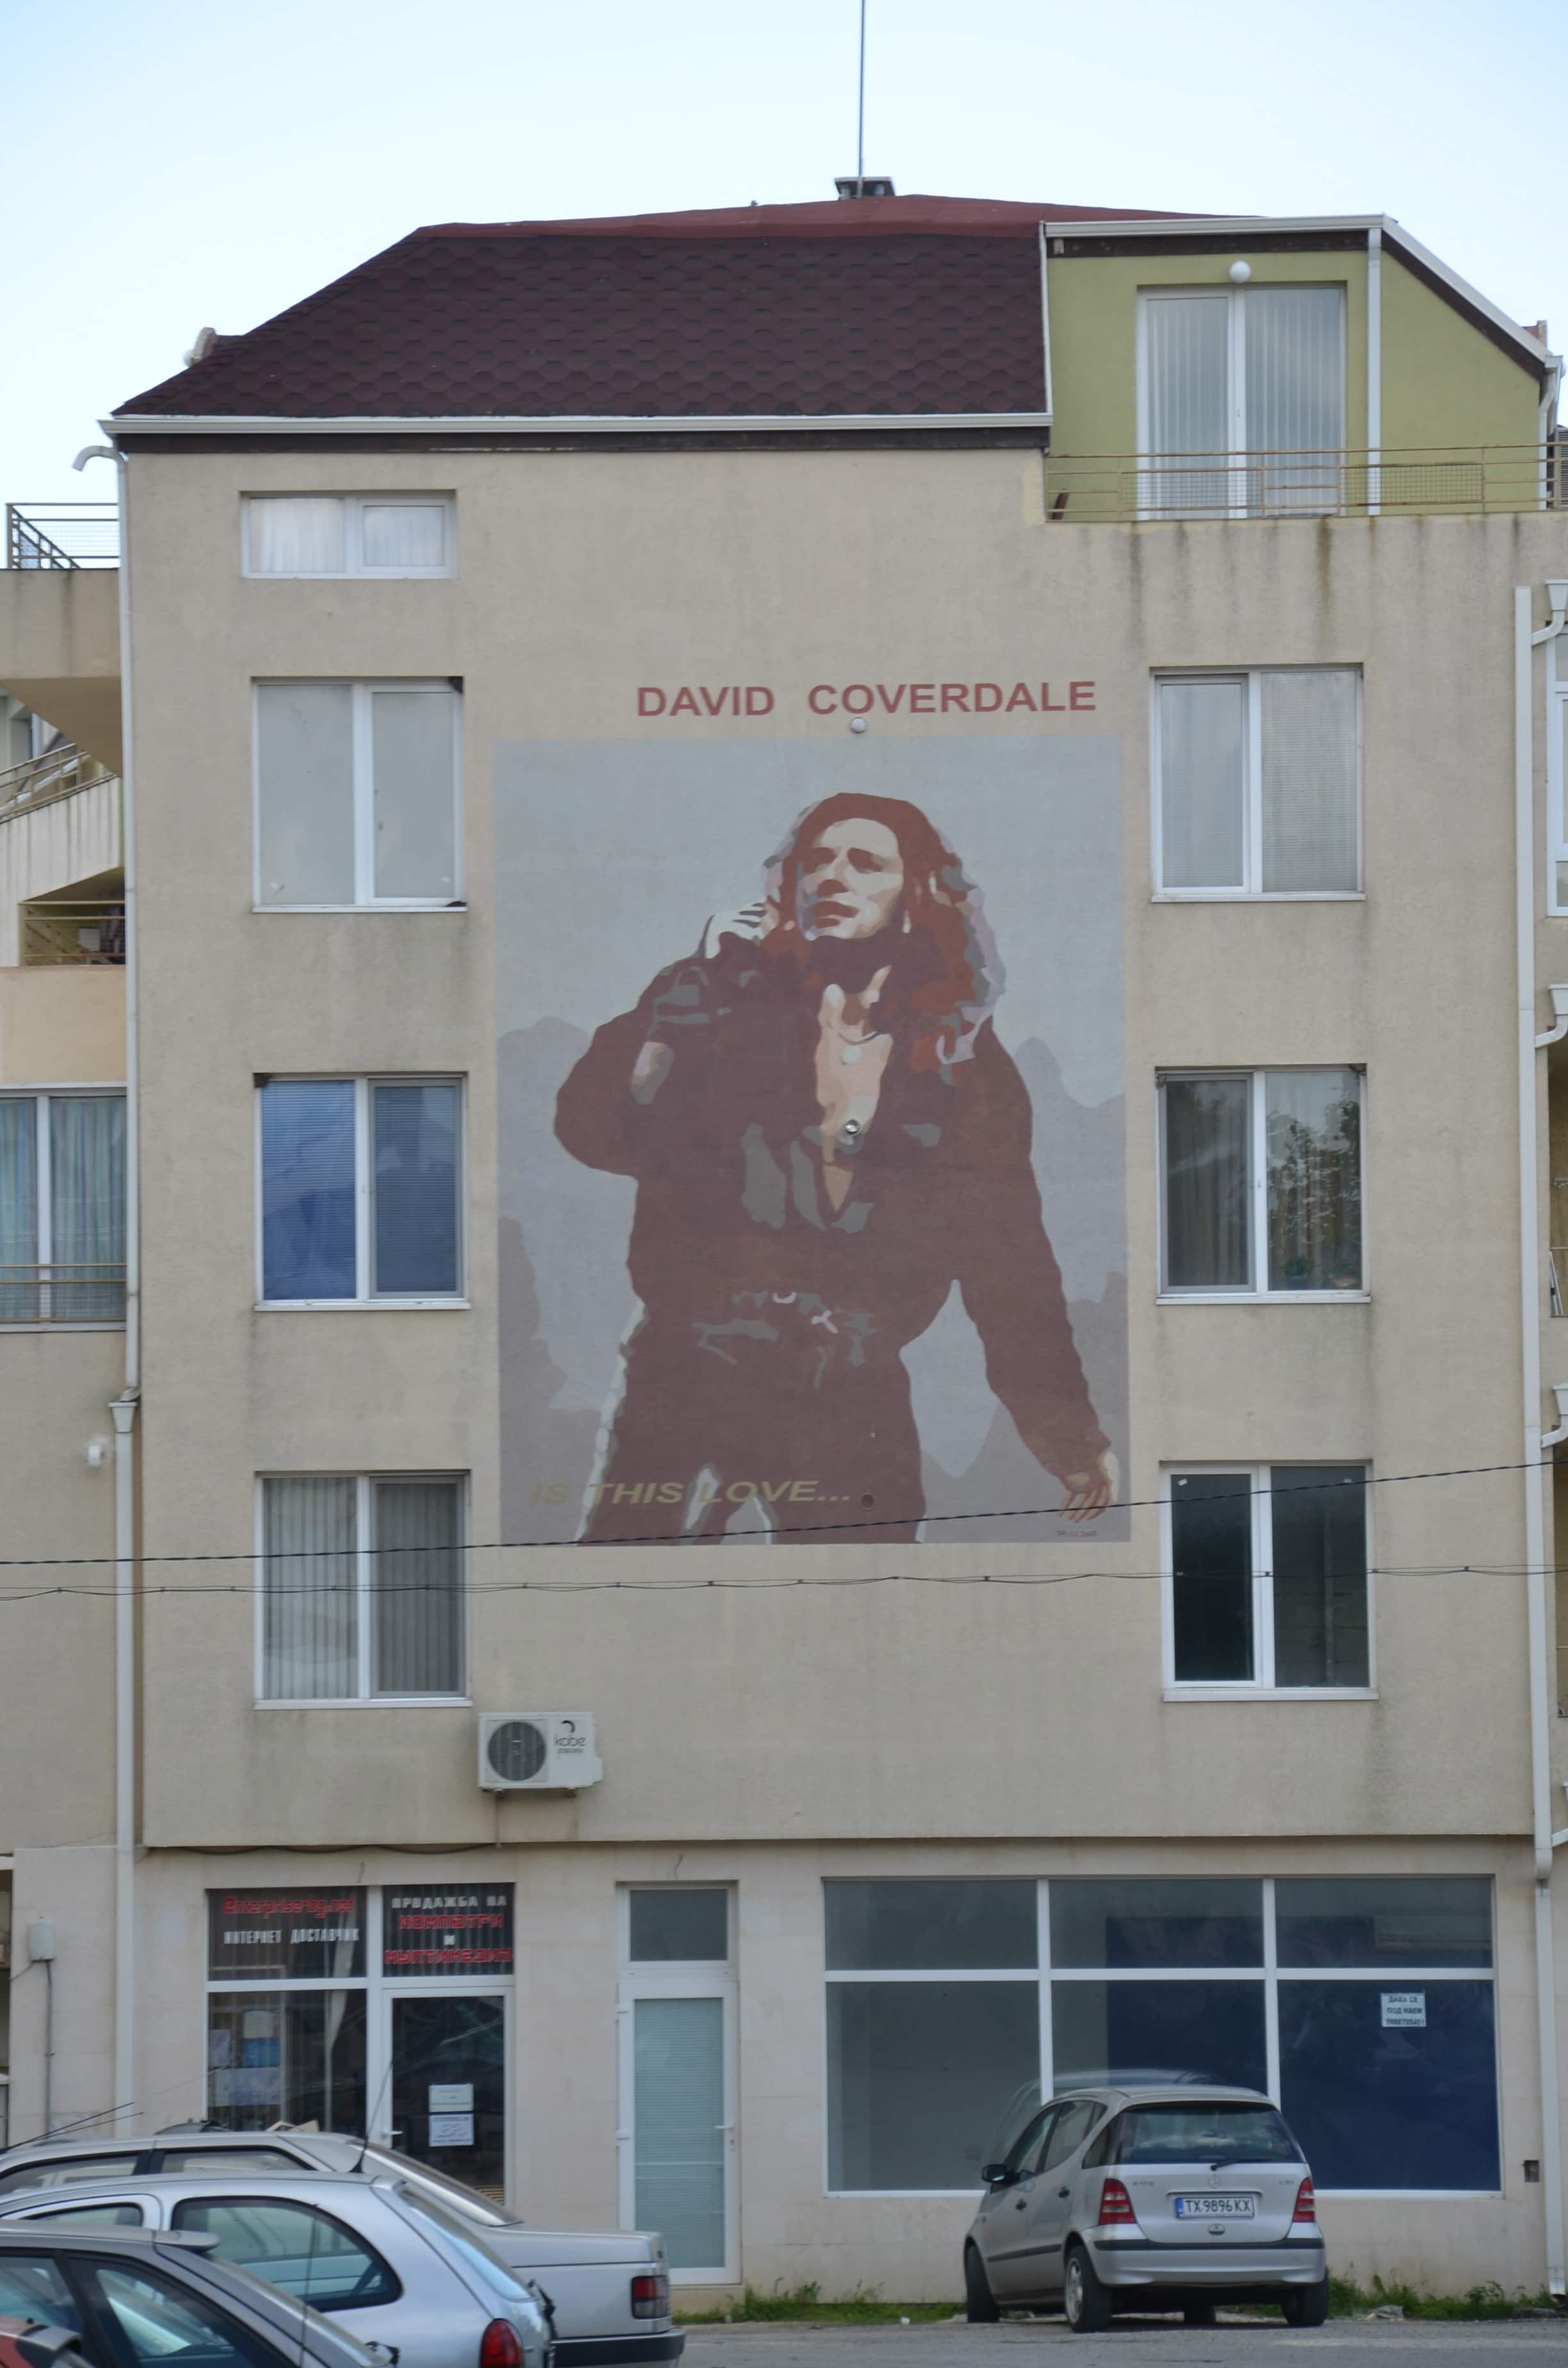 David Coverdale mural in Kavarna, Bulgaria